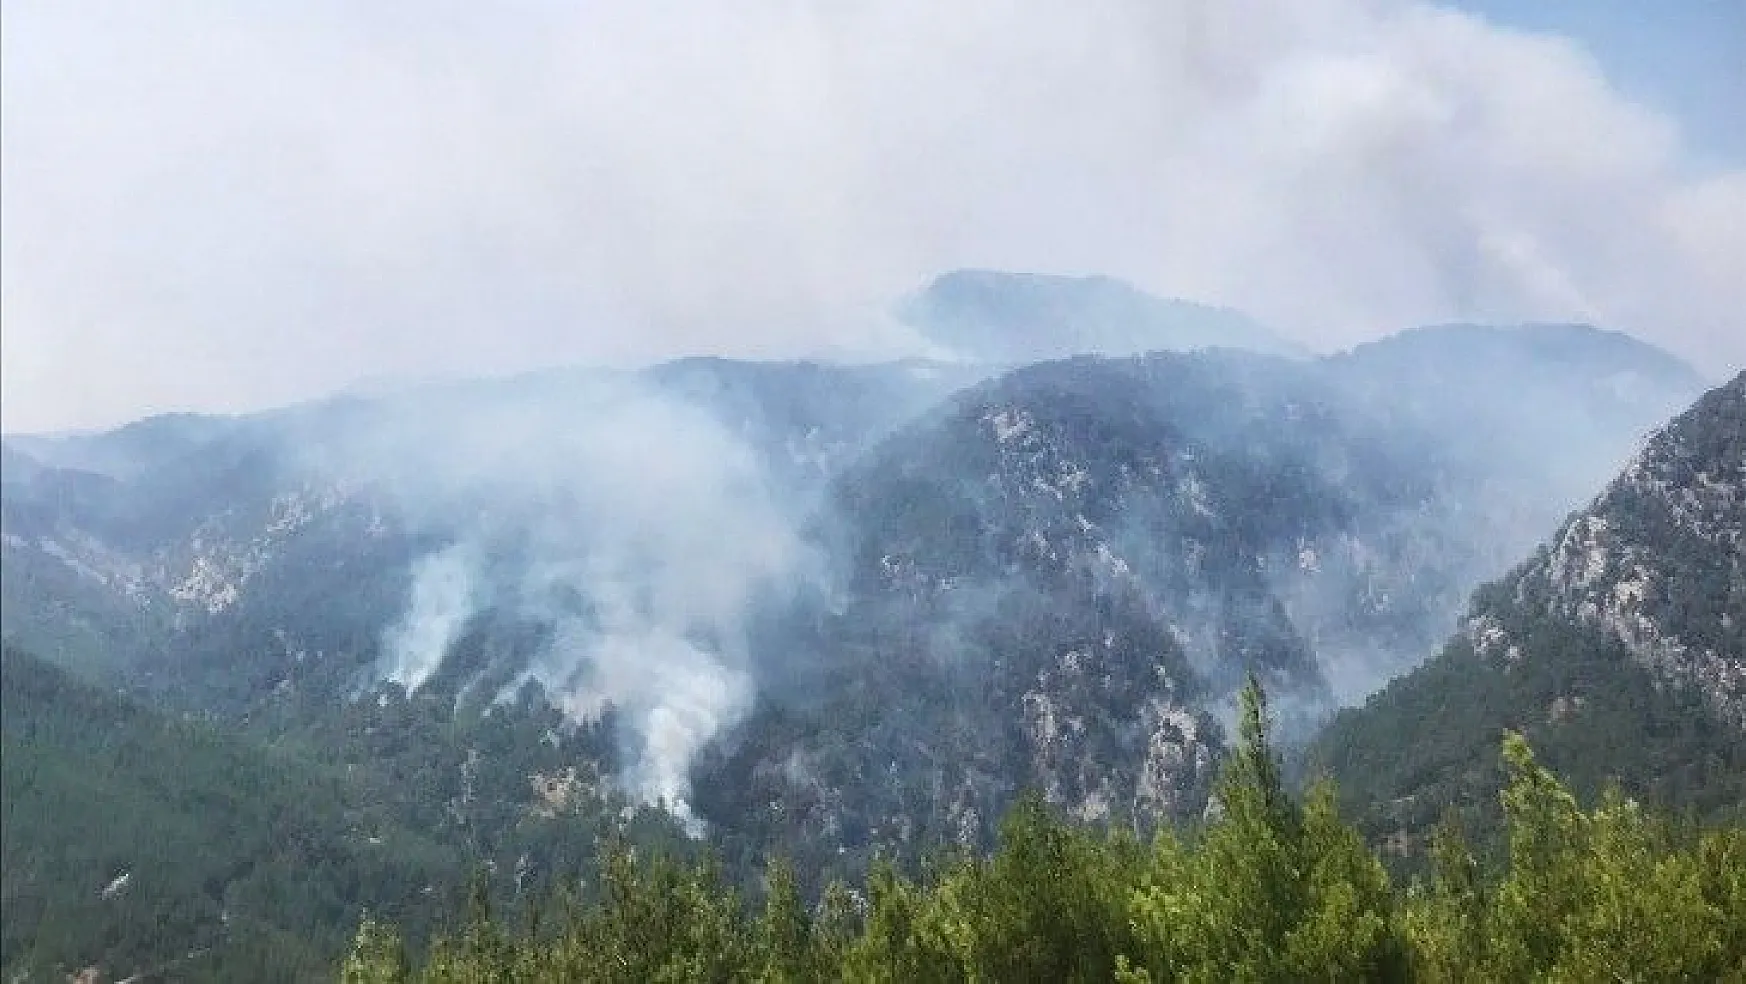 Köyceğiz yangınına 4 uçak ve helikopter müdahale ediyor